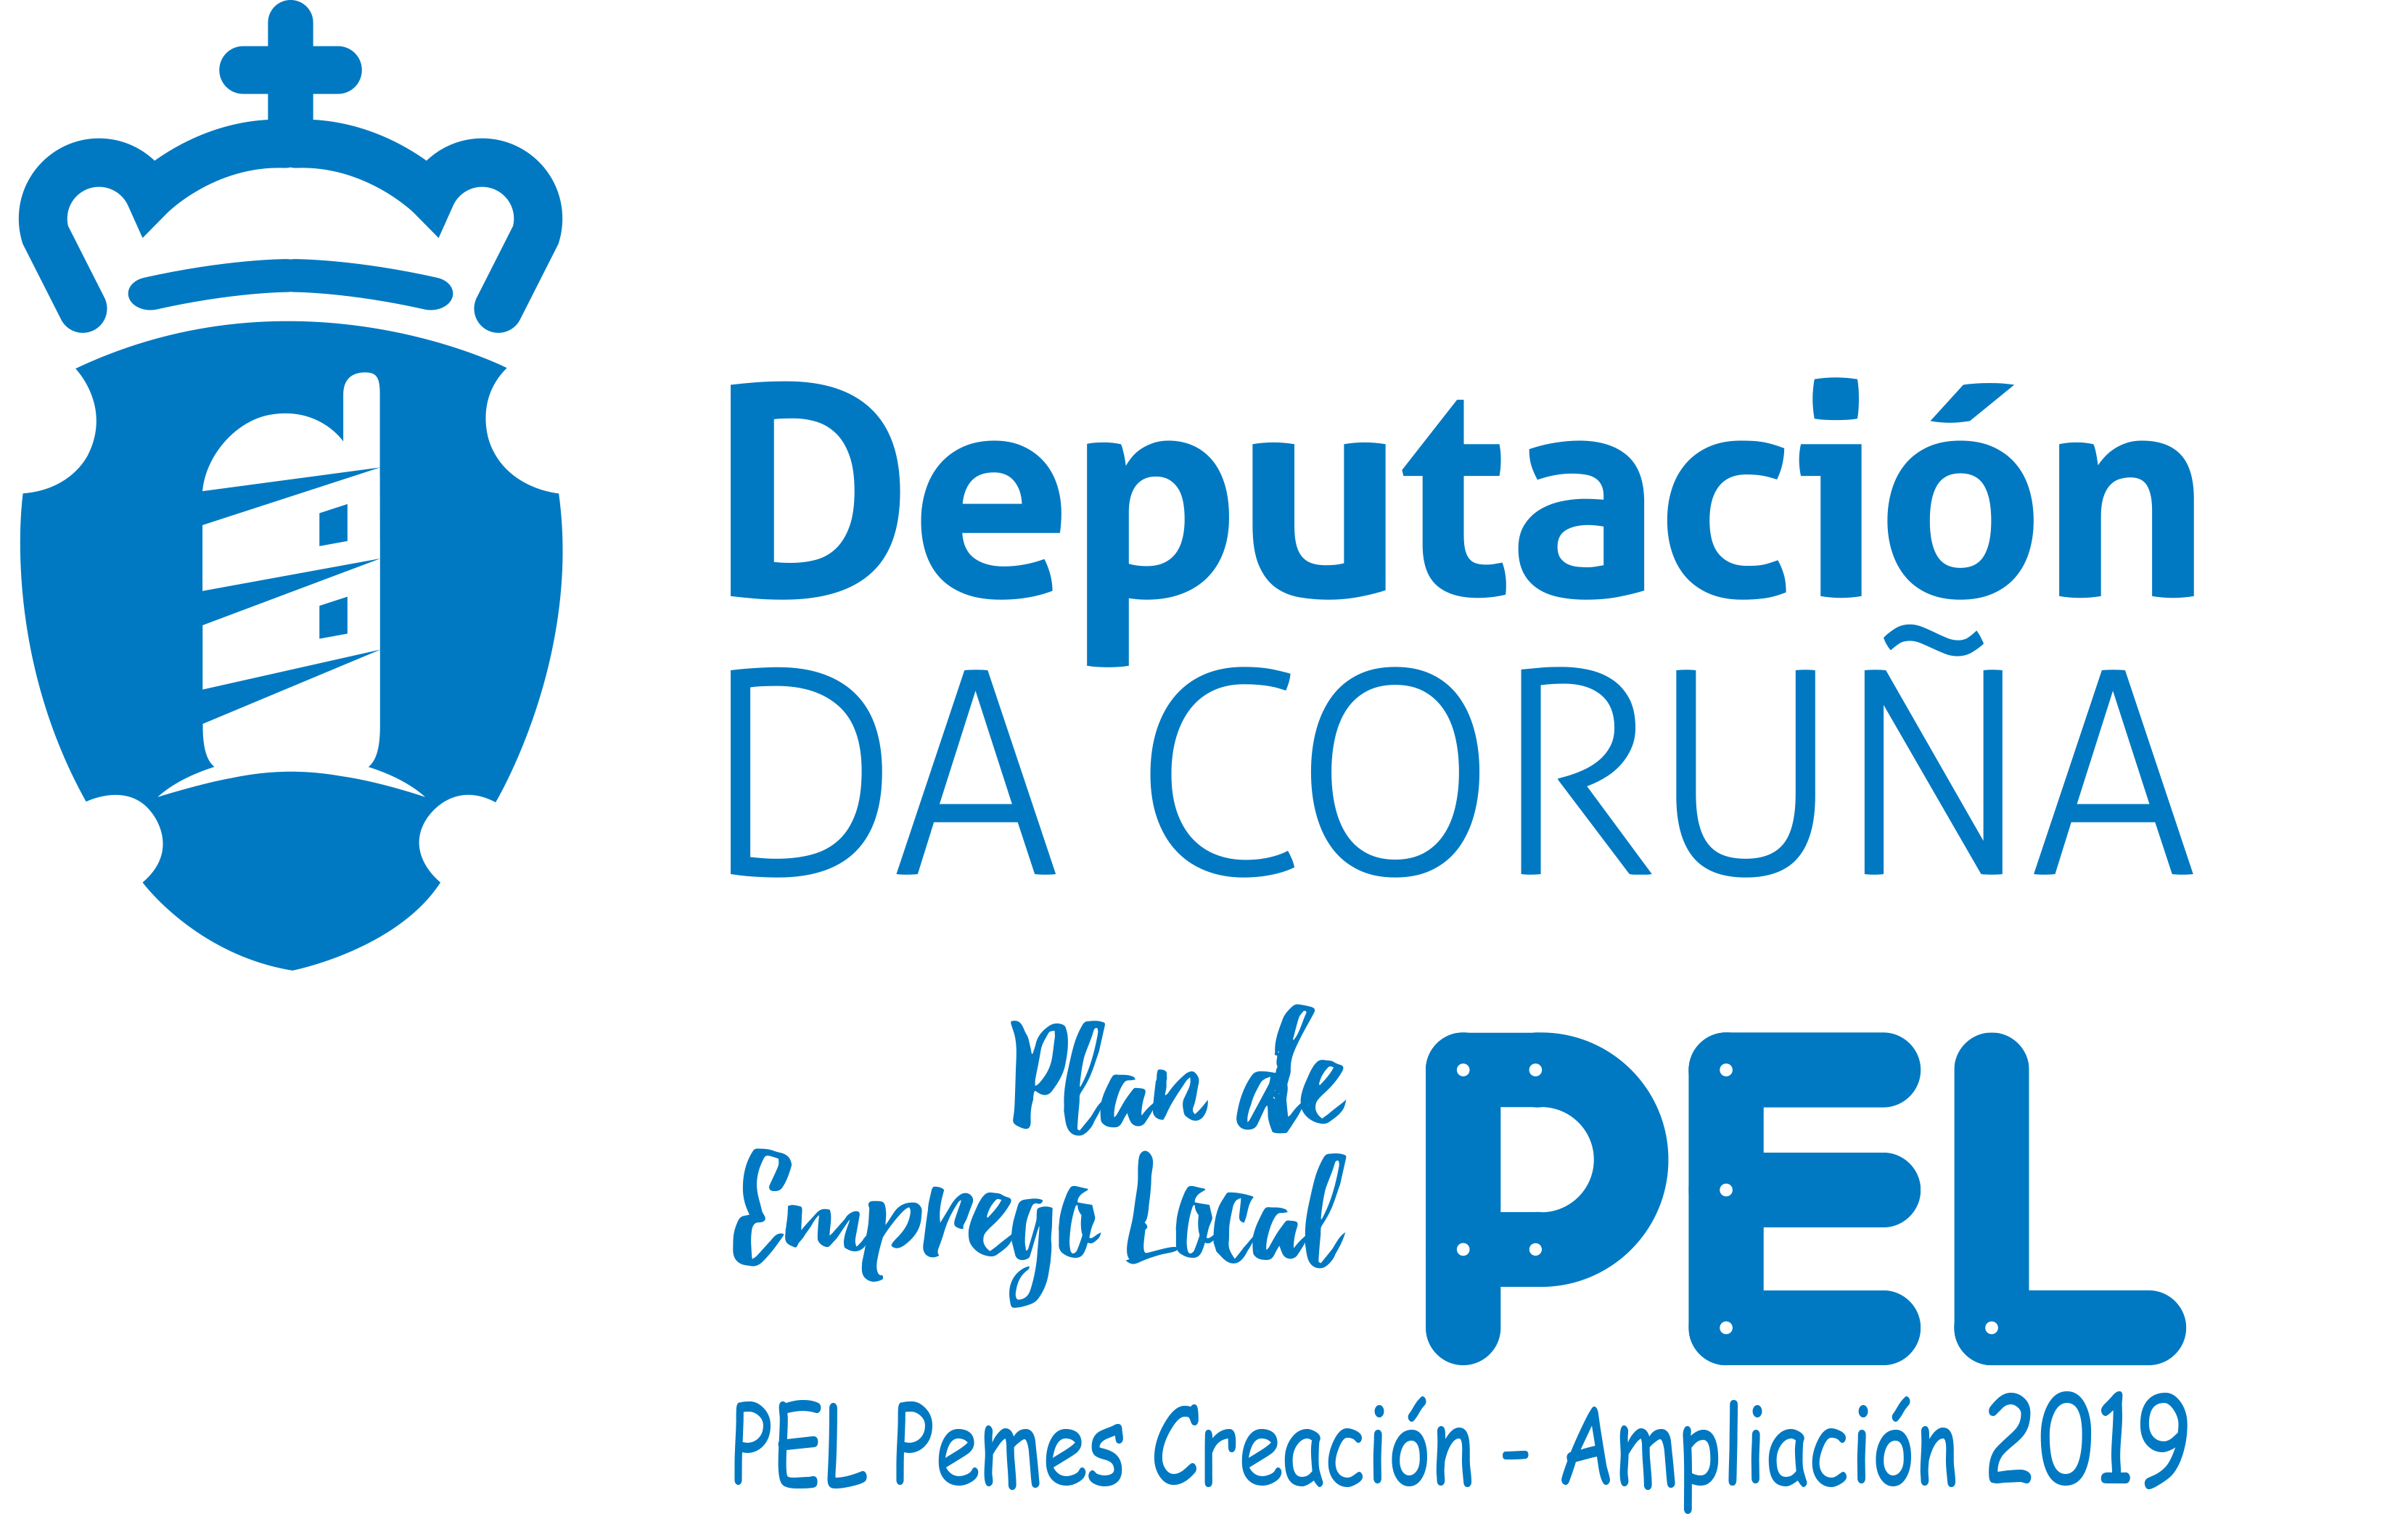 Plan de Emprego Local da Deputación da Coruña